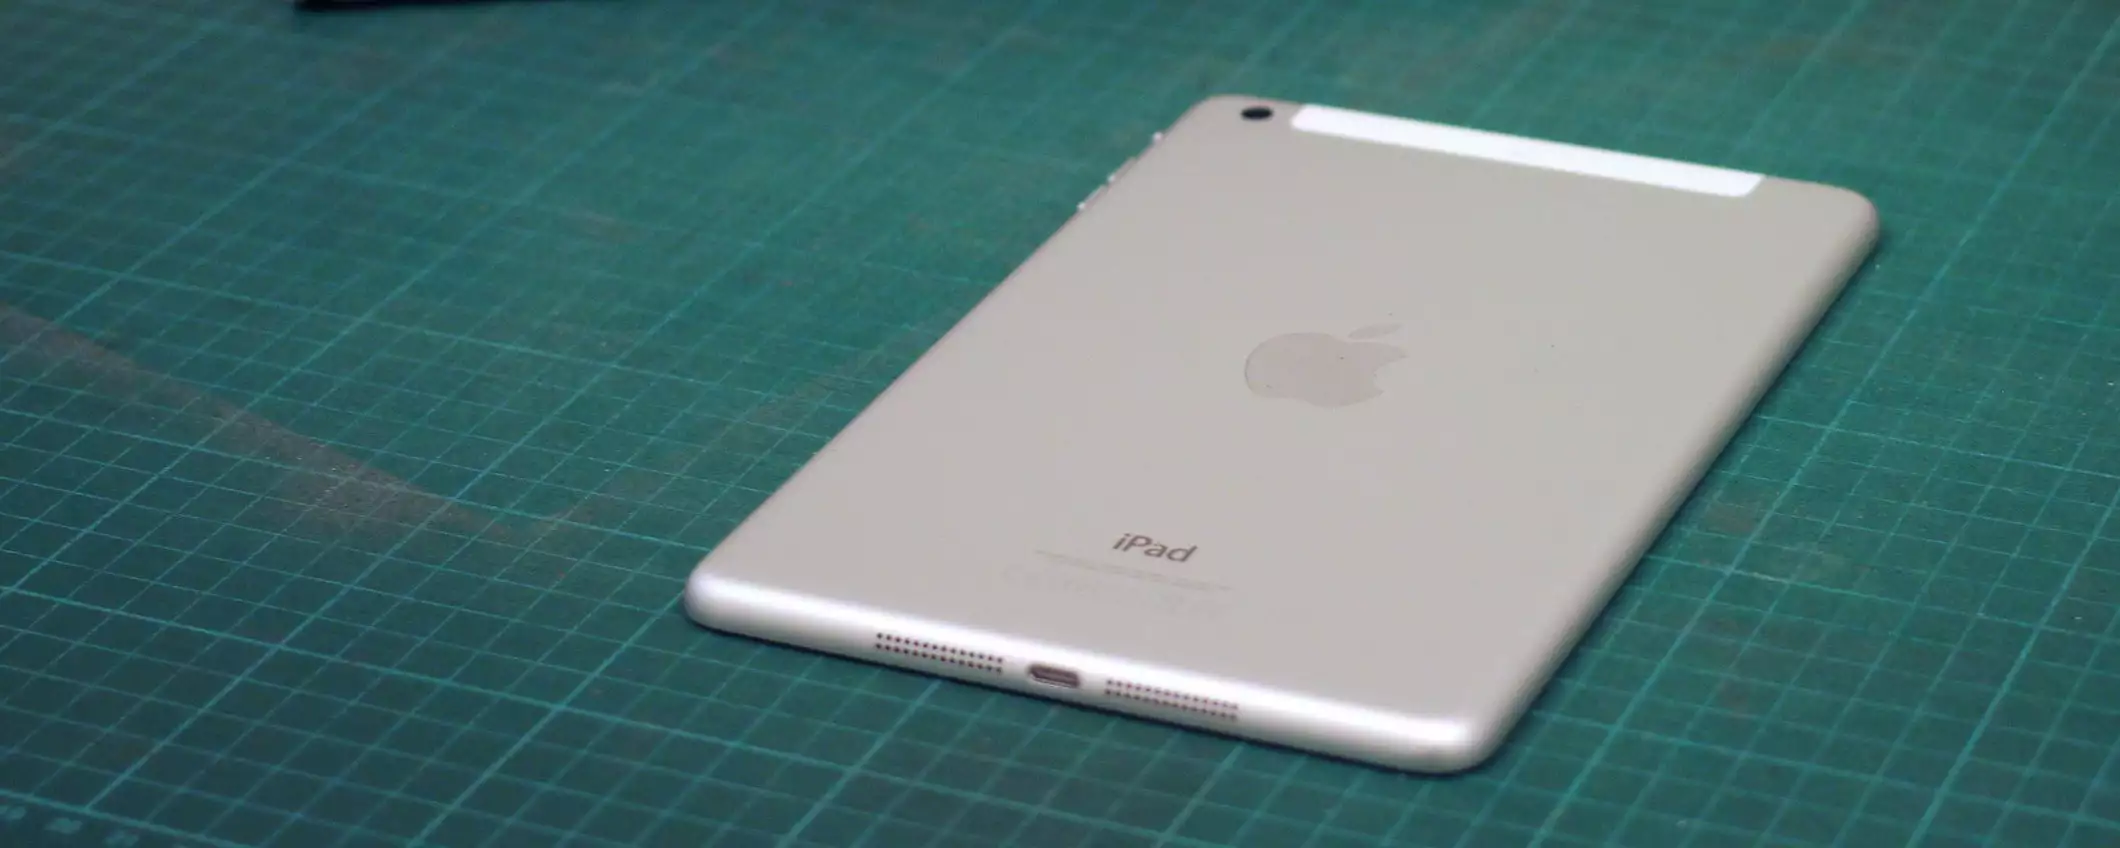 iPad mini 3: per Apple è ufficialmente obsoleto